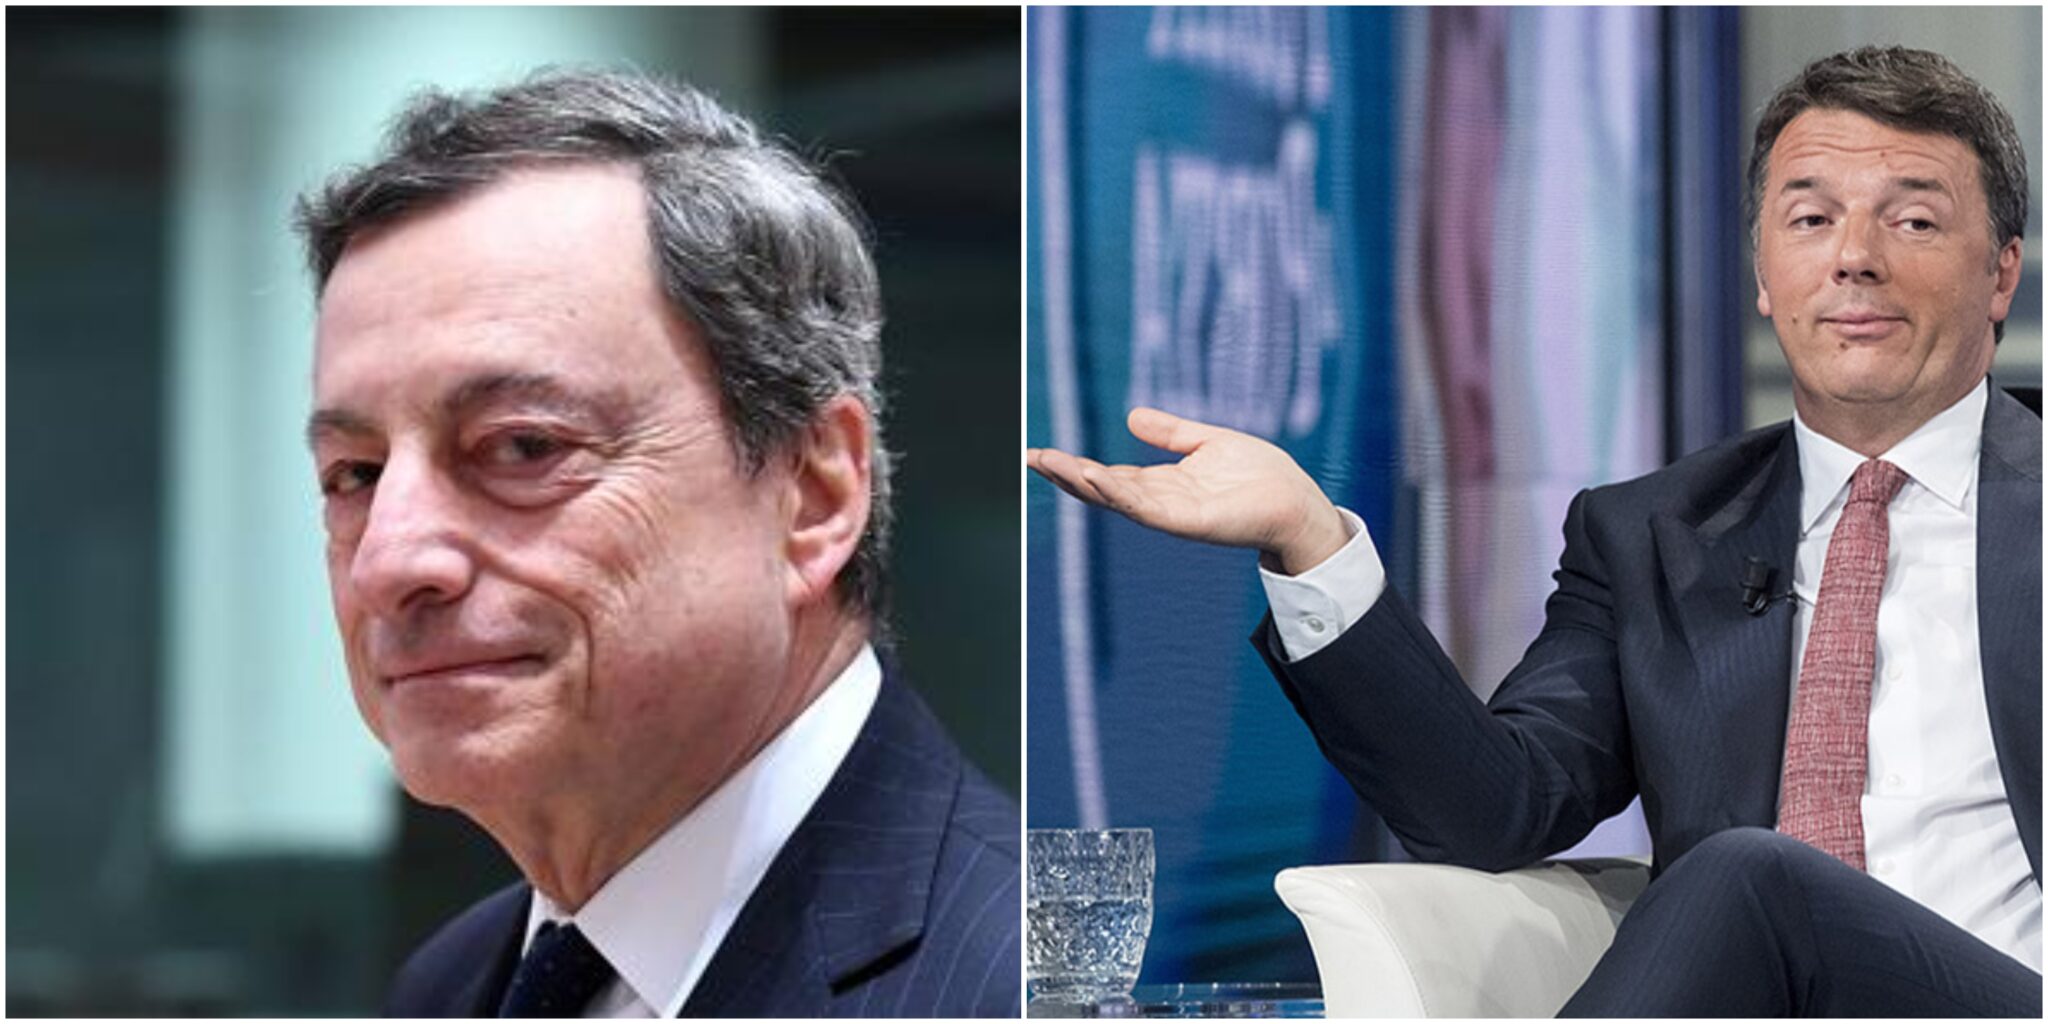 A parlare, ma stavolta per lanciare Draghi, è invece Renzi